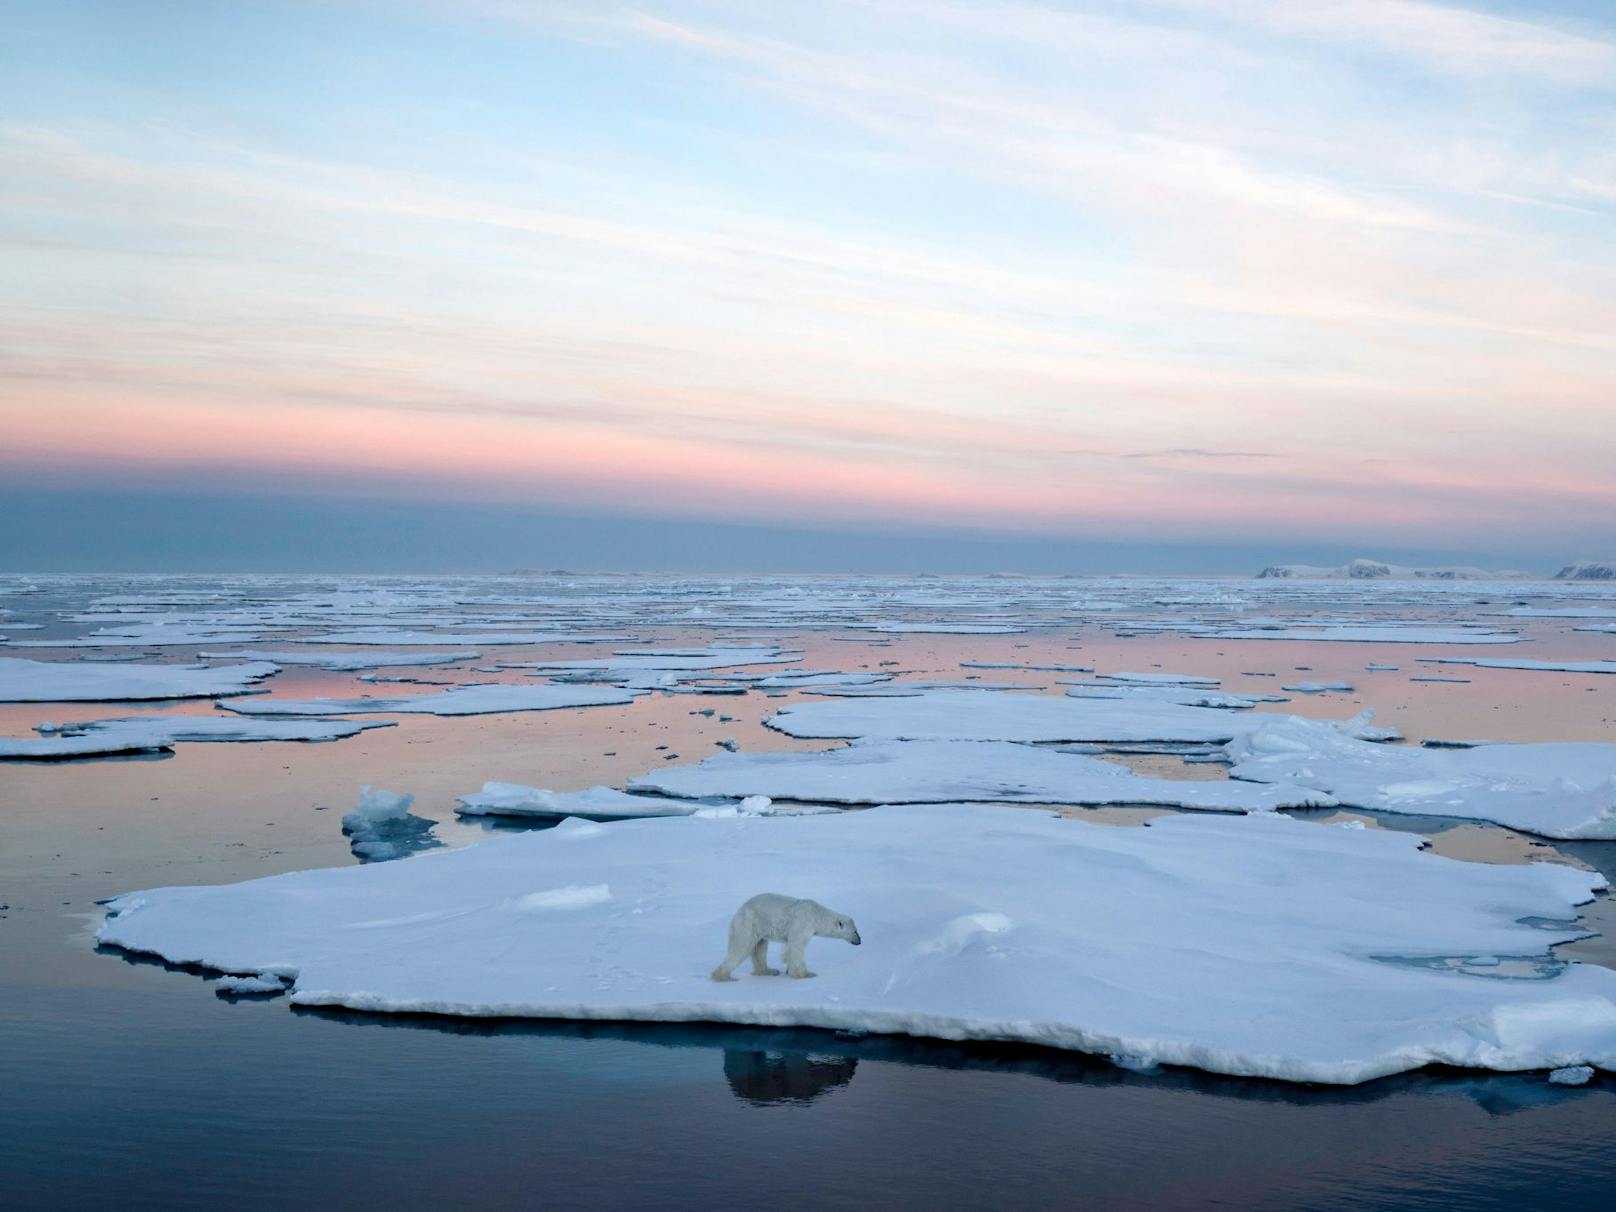 Die Arktis gilt als Hotspot des Klimawandels. Der rasante Eisverlust könnte einen Anstieg der Meeresspiegel um rund sechs Meter zur Folge haben.